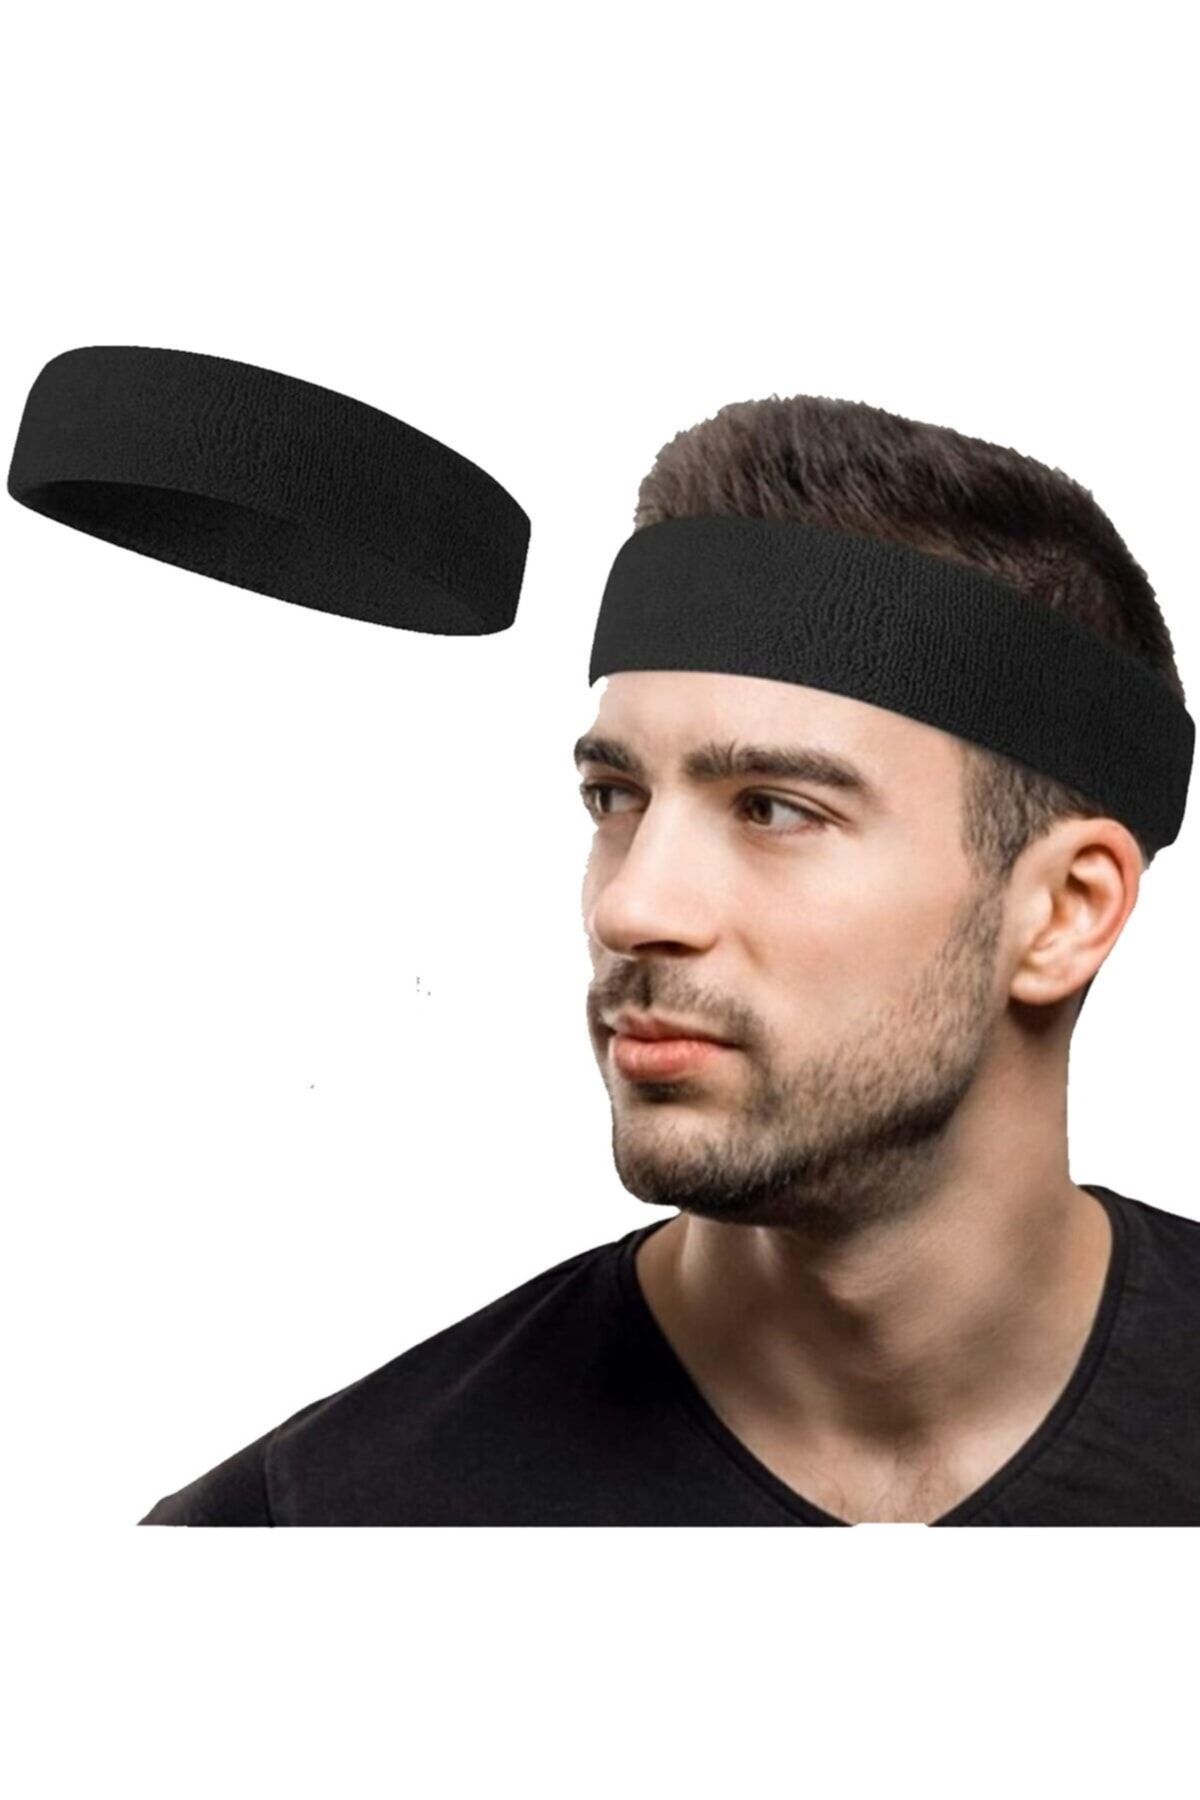 Maksimen Sporcu Havlu Saç Bandı Kafa Bandı Headband